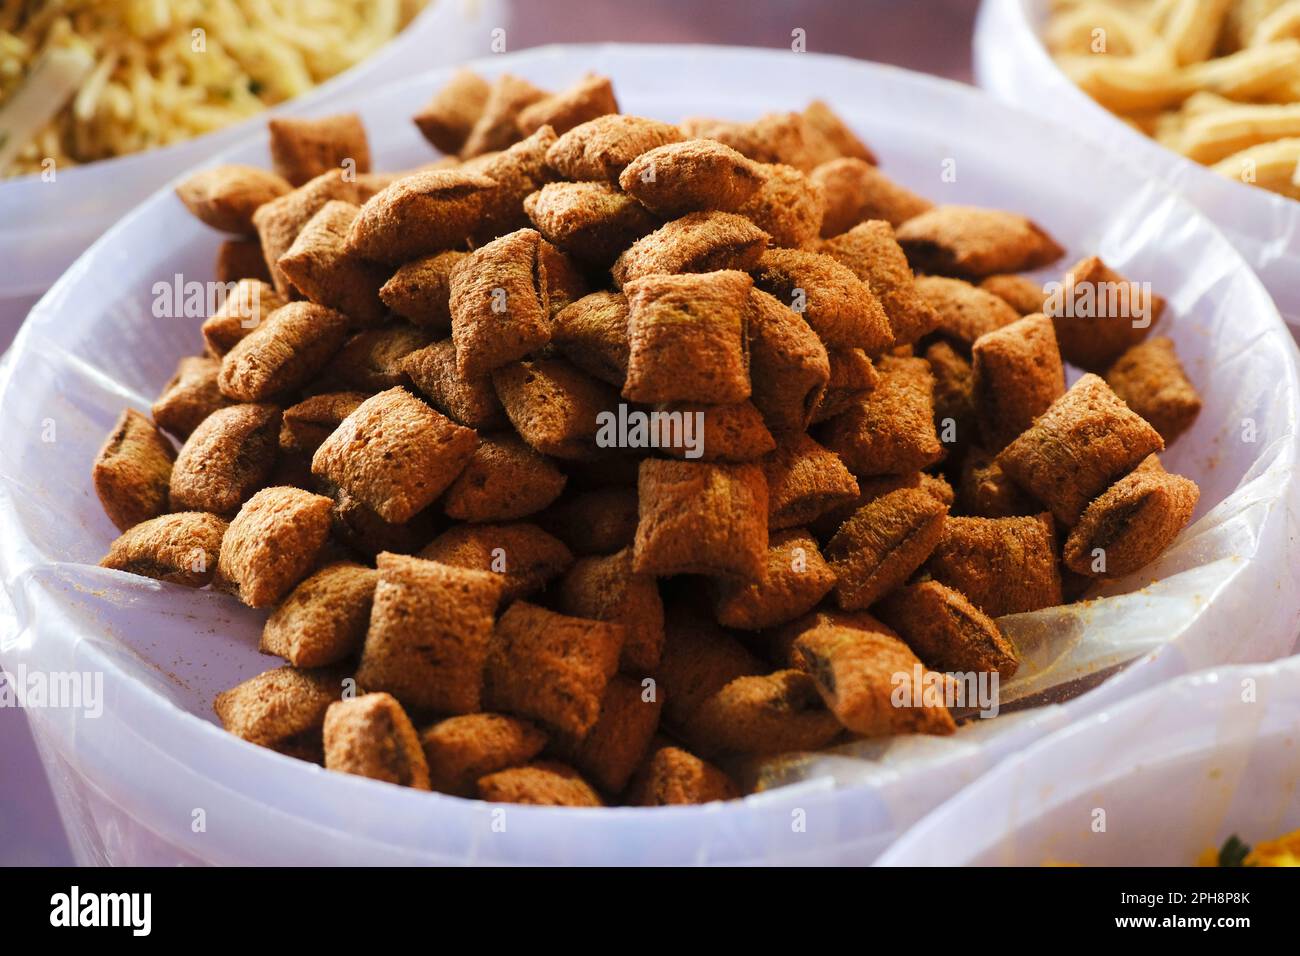 Farsan, spuntini in ciotole in vendita nel mercato indiano, piatto tradizionale indiano salato fritto fatto di grammo farina e mescolato con frutta secca. Foto Stock